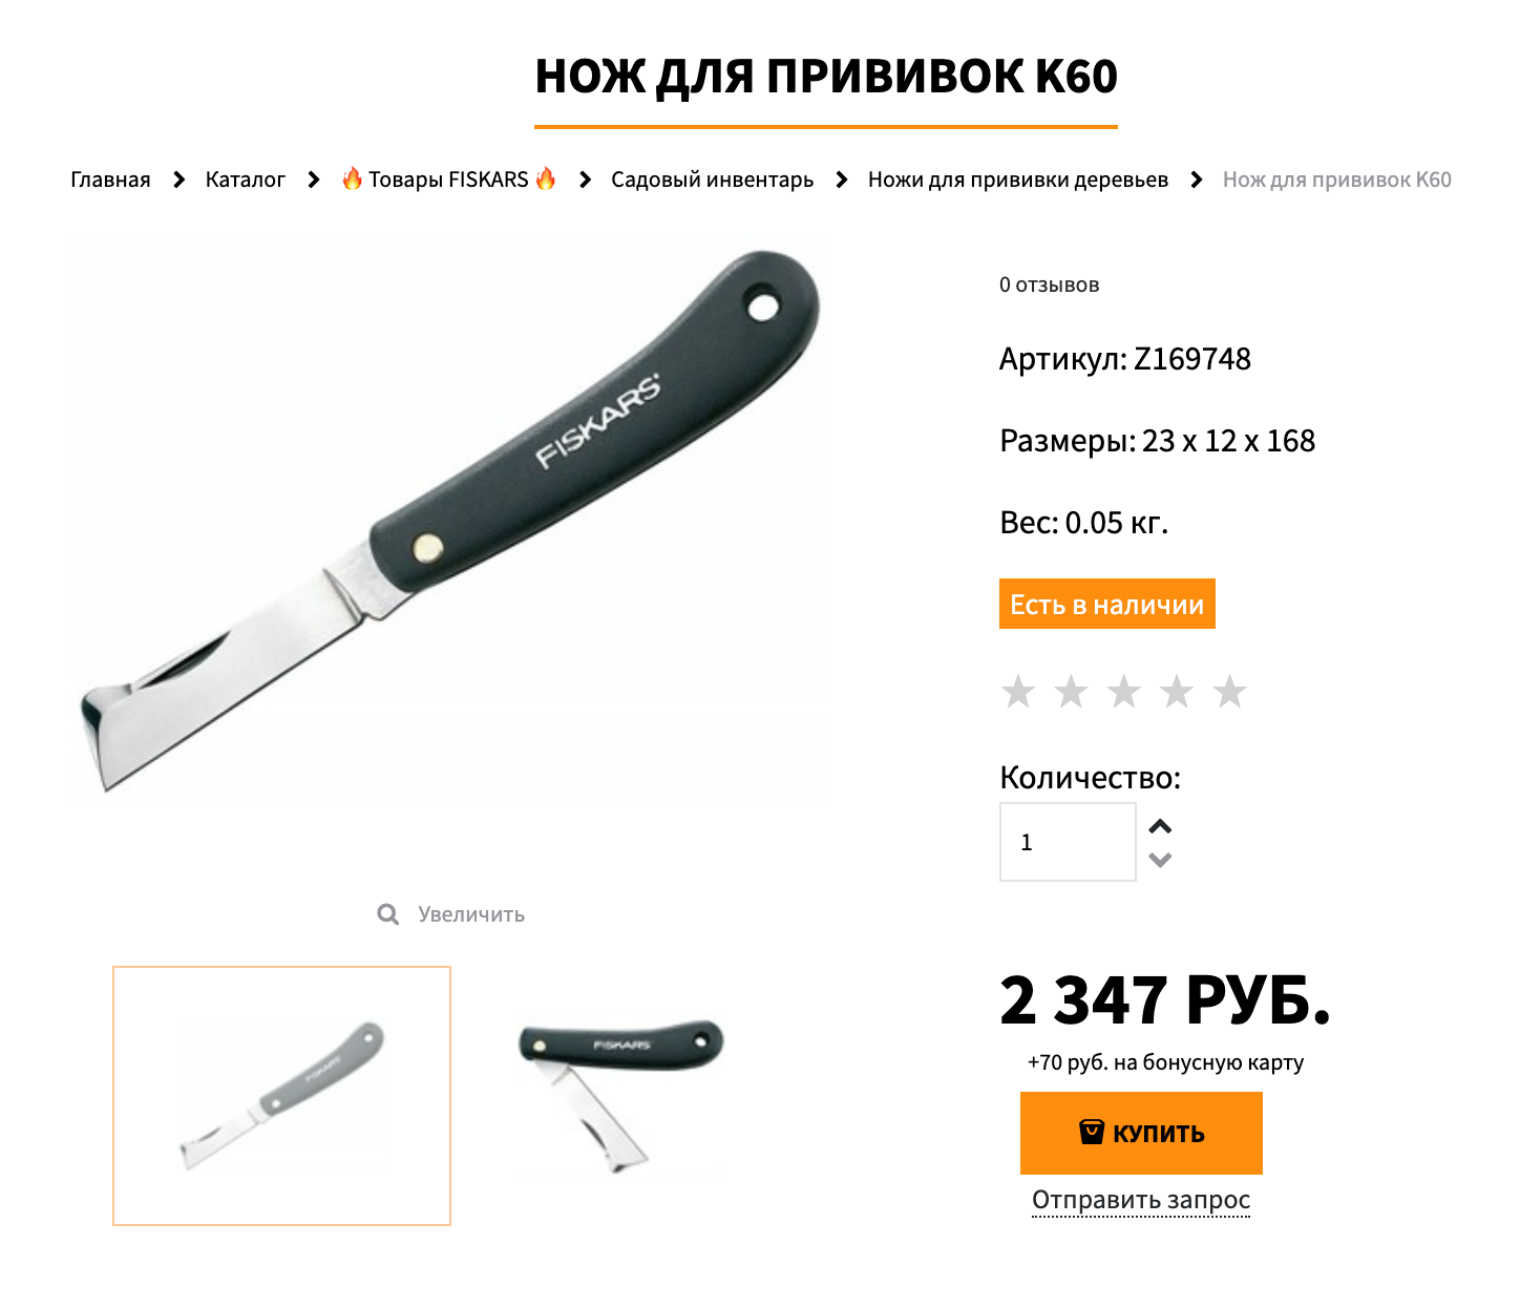 Такой нож подходит для прививки, подрезания и подравнивания кустарников и растений. Источник: gerber-russia.ru